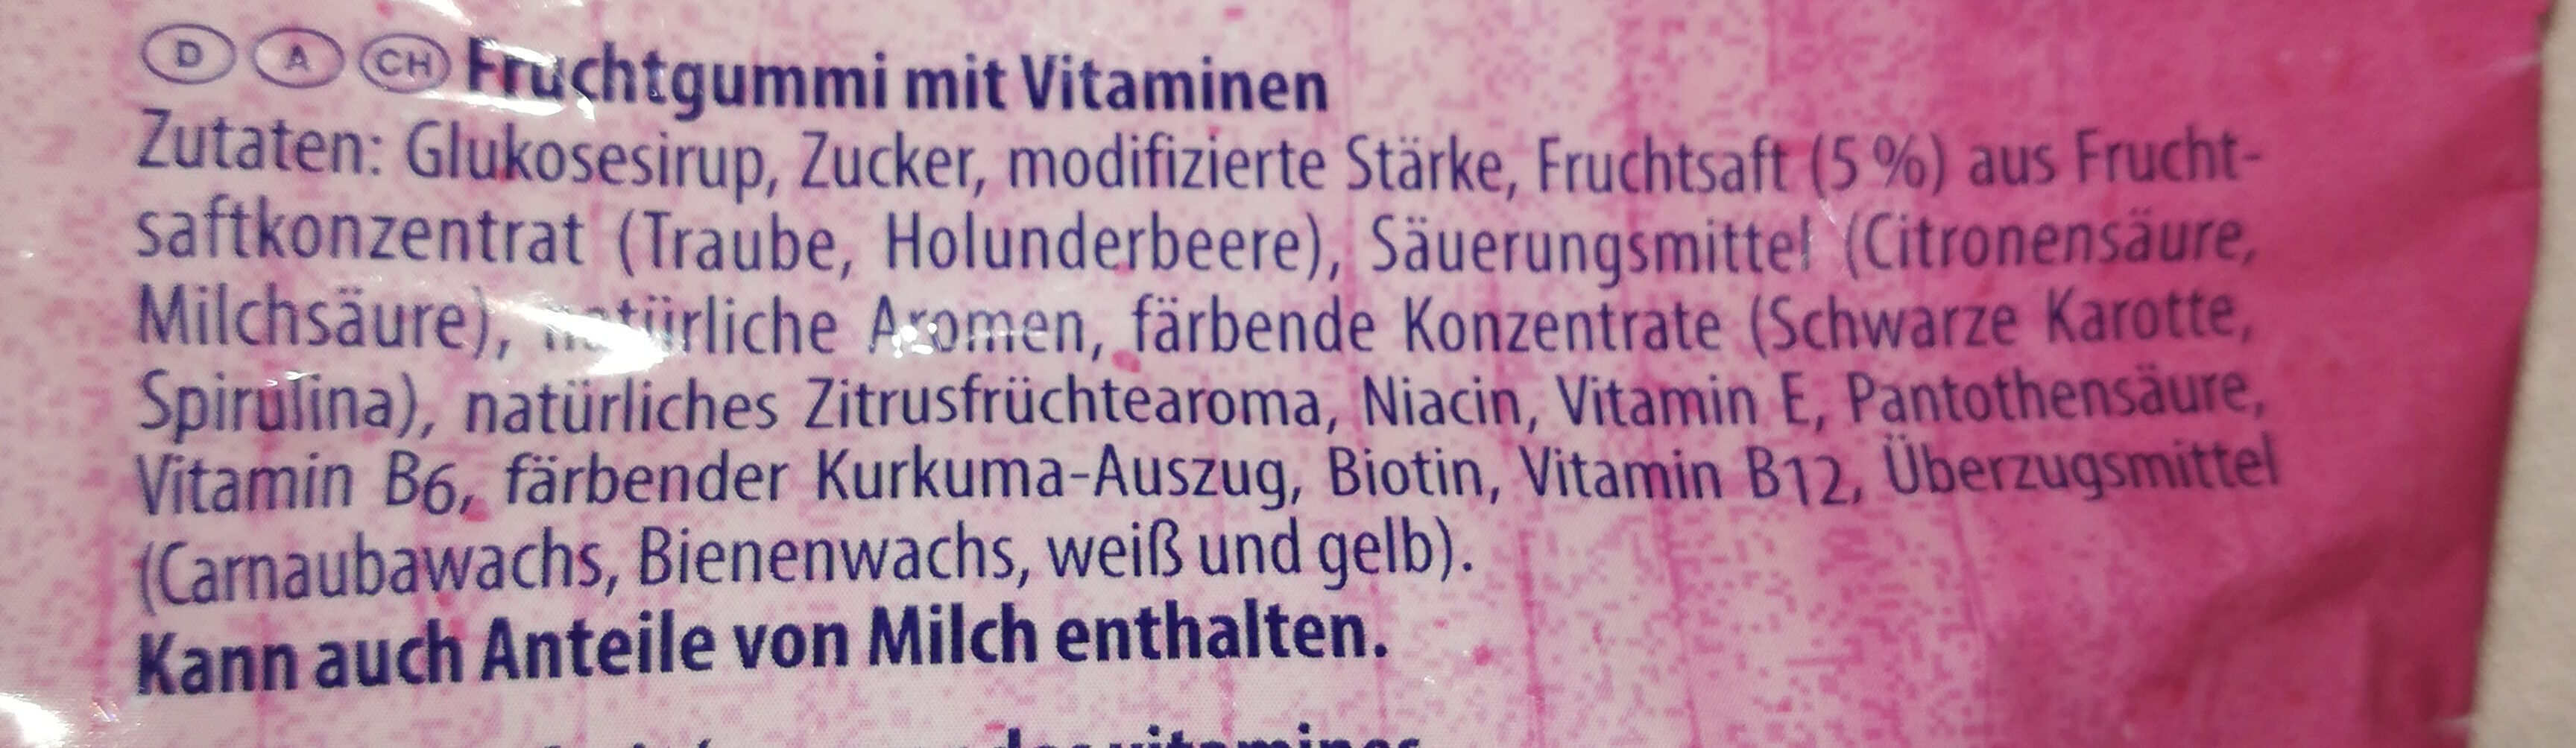 Lachgummi Märchen Prinzen - Ingredients - de